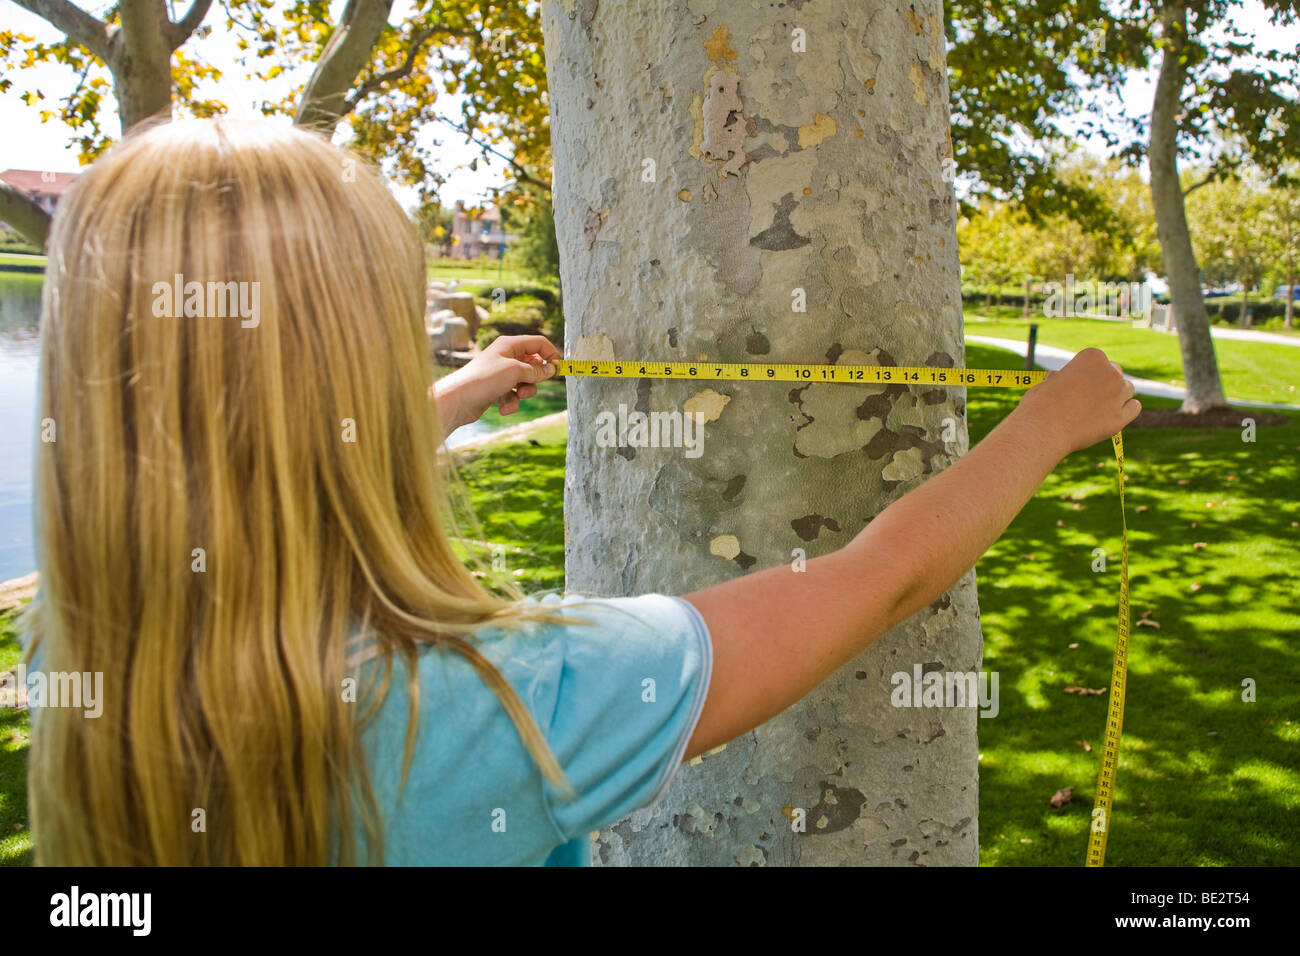 11 12 Jahre altes Kind Schätzungen der Durchmesser Zoll Sycamore Tree Trunk mit einem Maßband. junge Mensch Menschen Natur, natürliche Umgebung Herr Myrleen Pearson Stockfoto